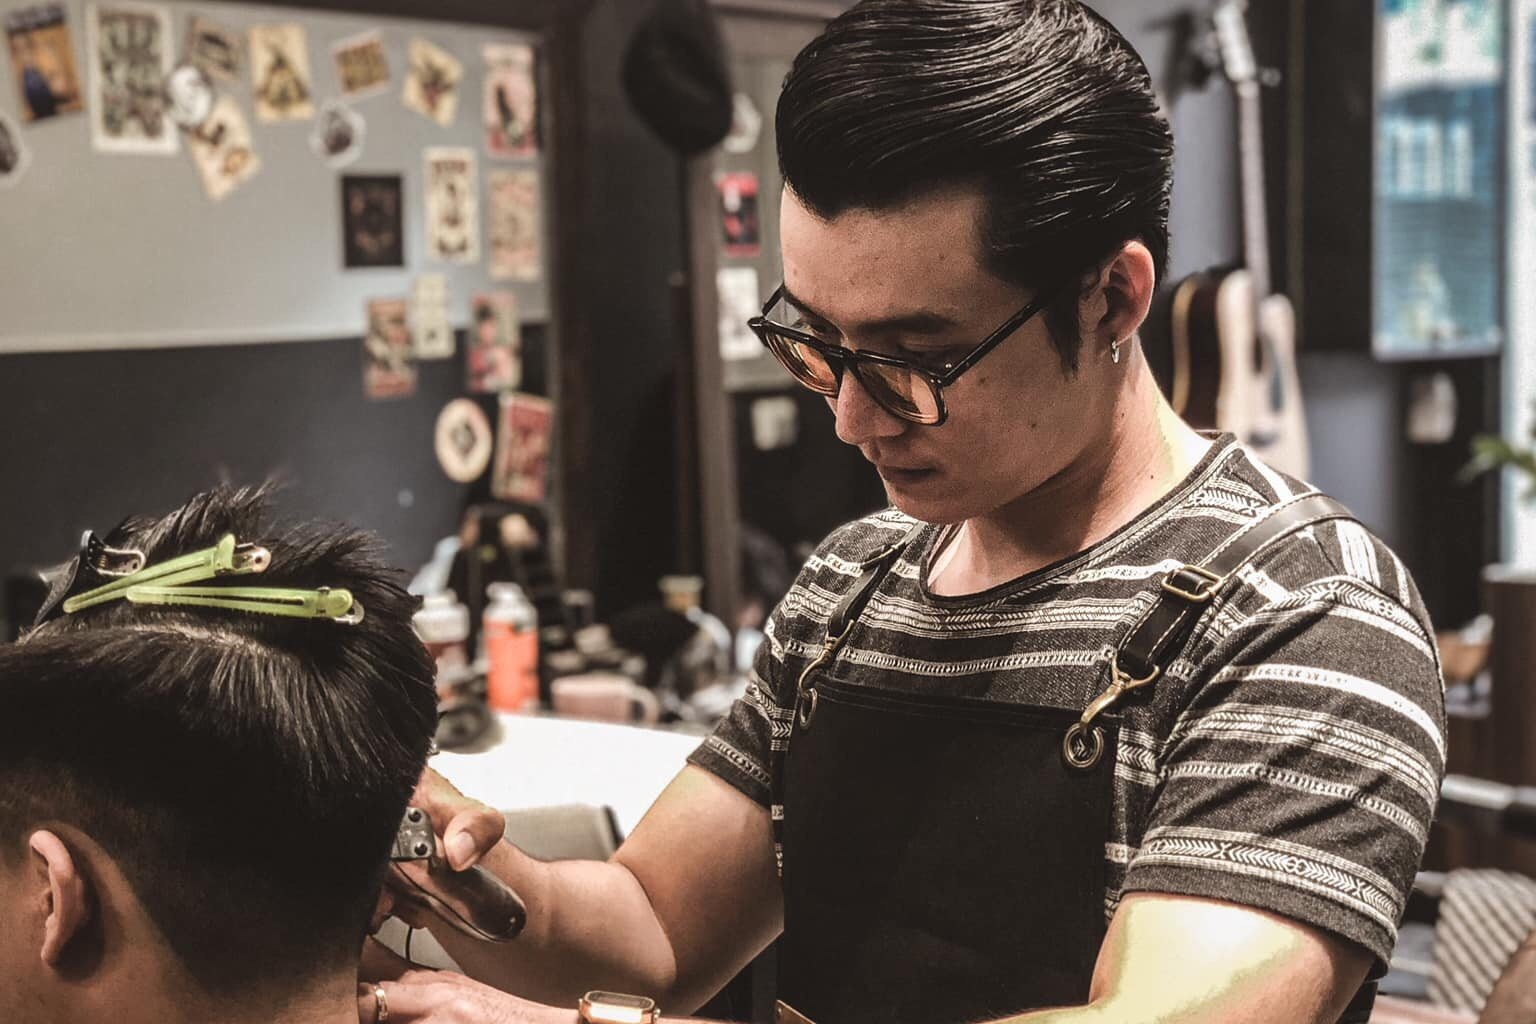 Top 9 Tiệm cắt tóc nam đẹp và chất lượng nhất quận Tân Bình TP HCM   Toplistvn